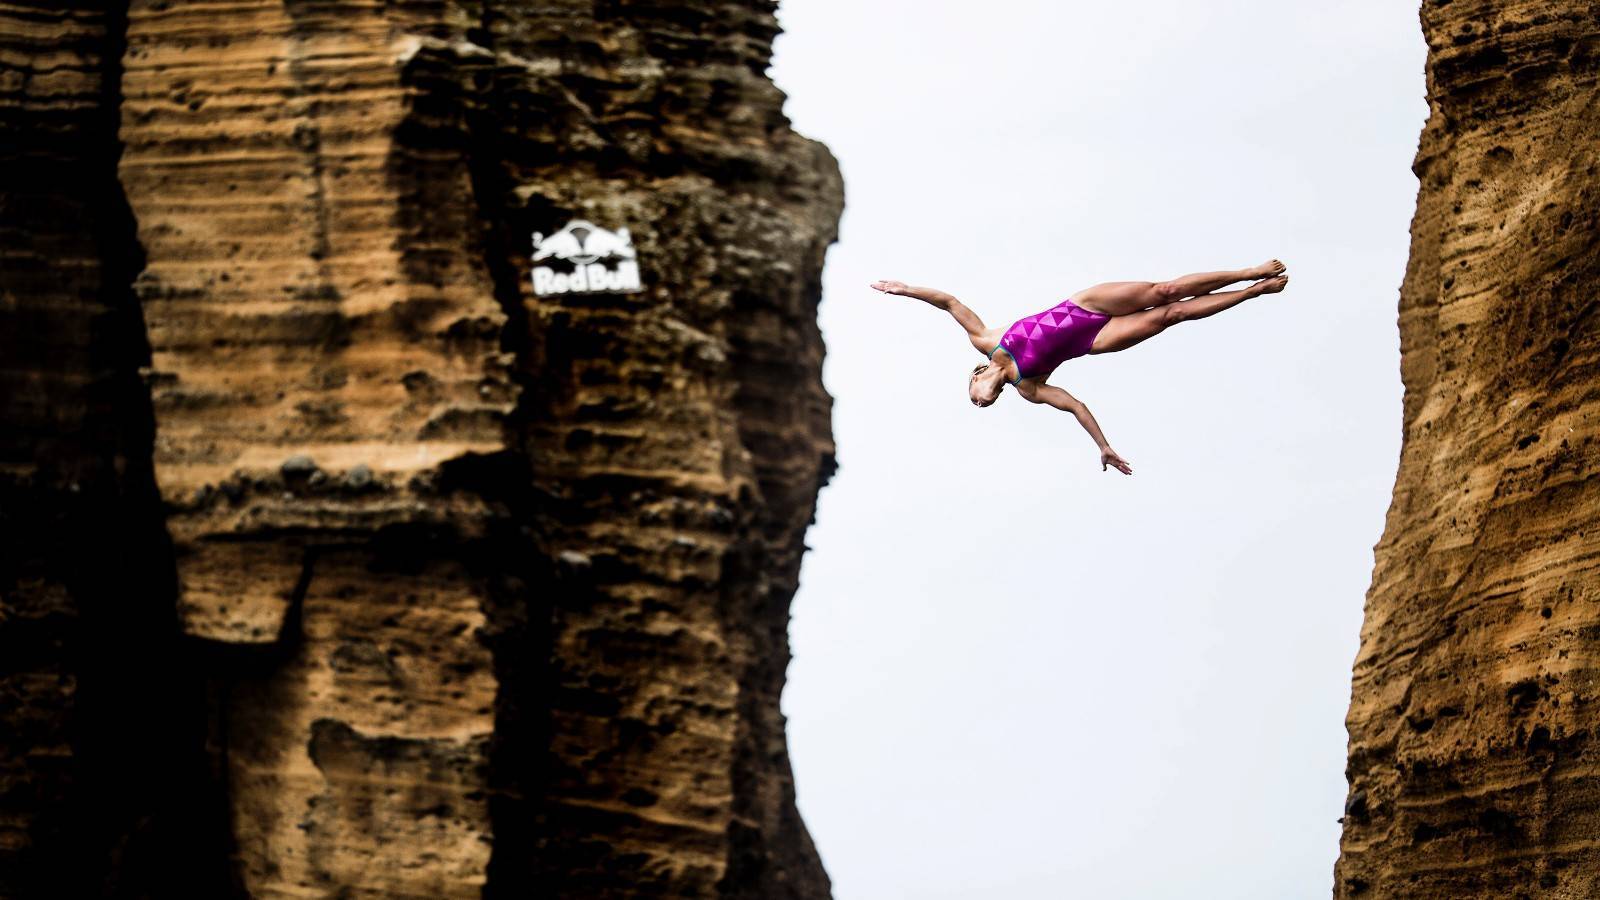 Клифф-дайвинг - лучшие места для экстремальных прыжков